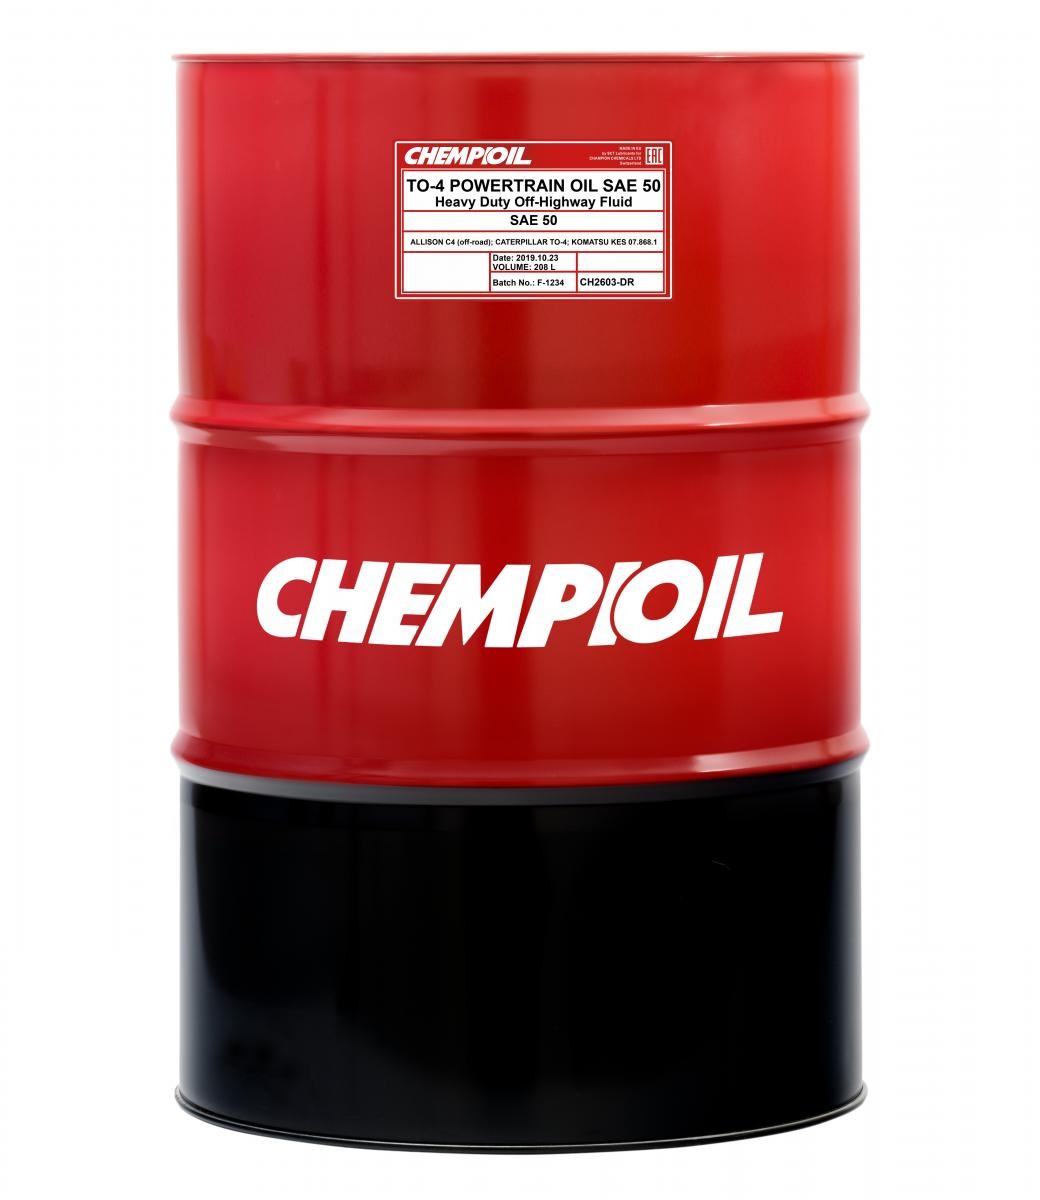 Olio per auto CH2603-DR CHEMPIOIL SAE 50 KOMATSU KES 07.868.1 POWERTRAIN OIL, TO-4